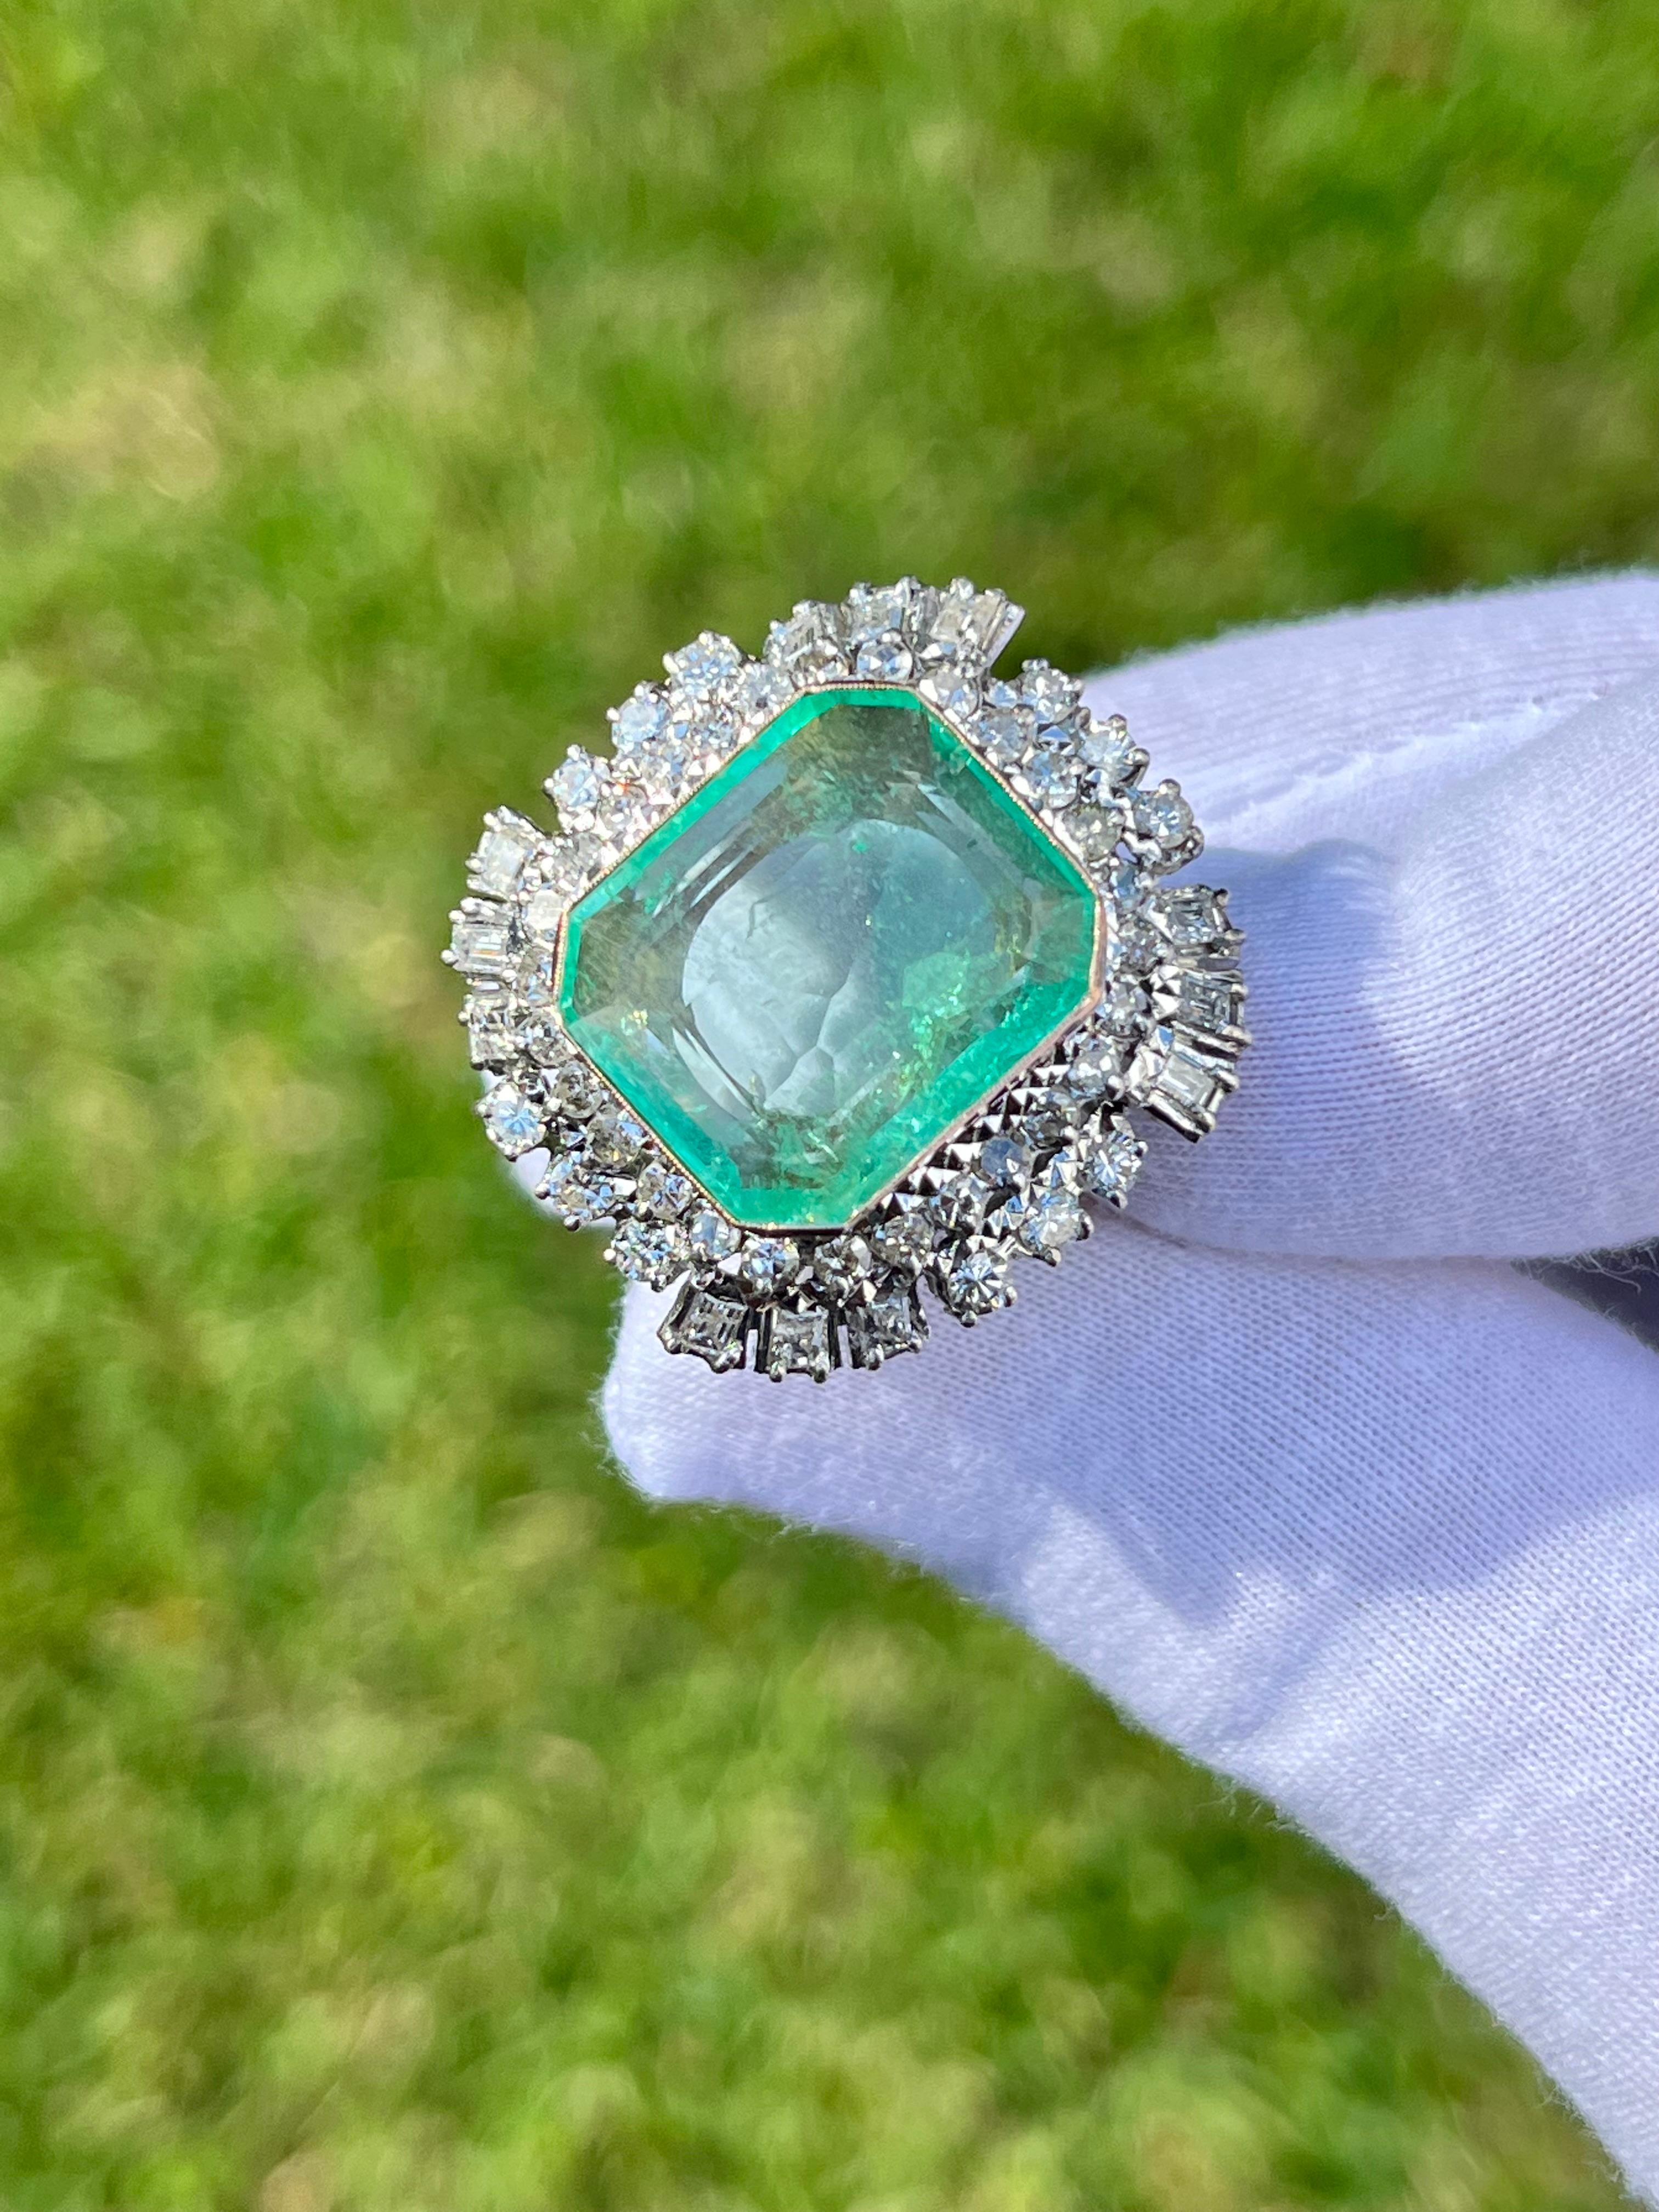 12 carat emerald price